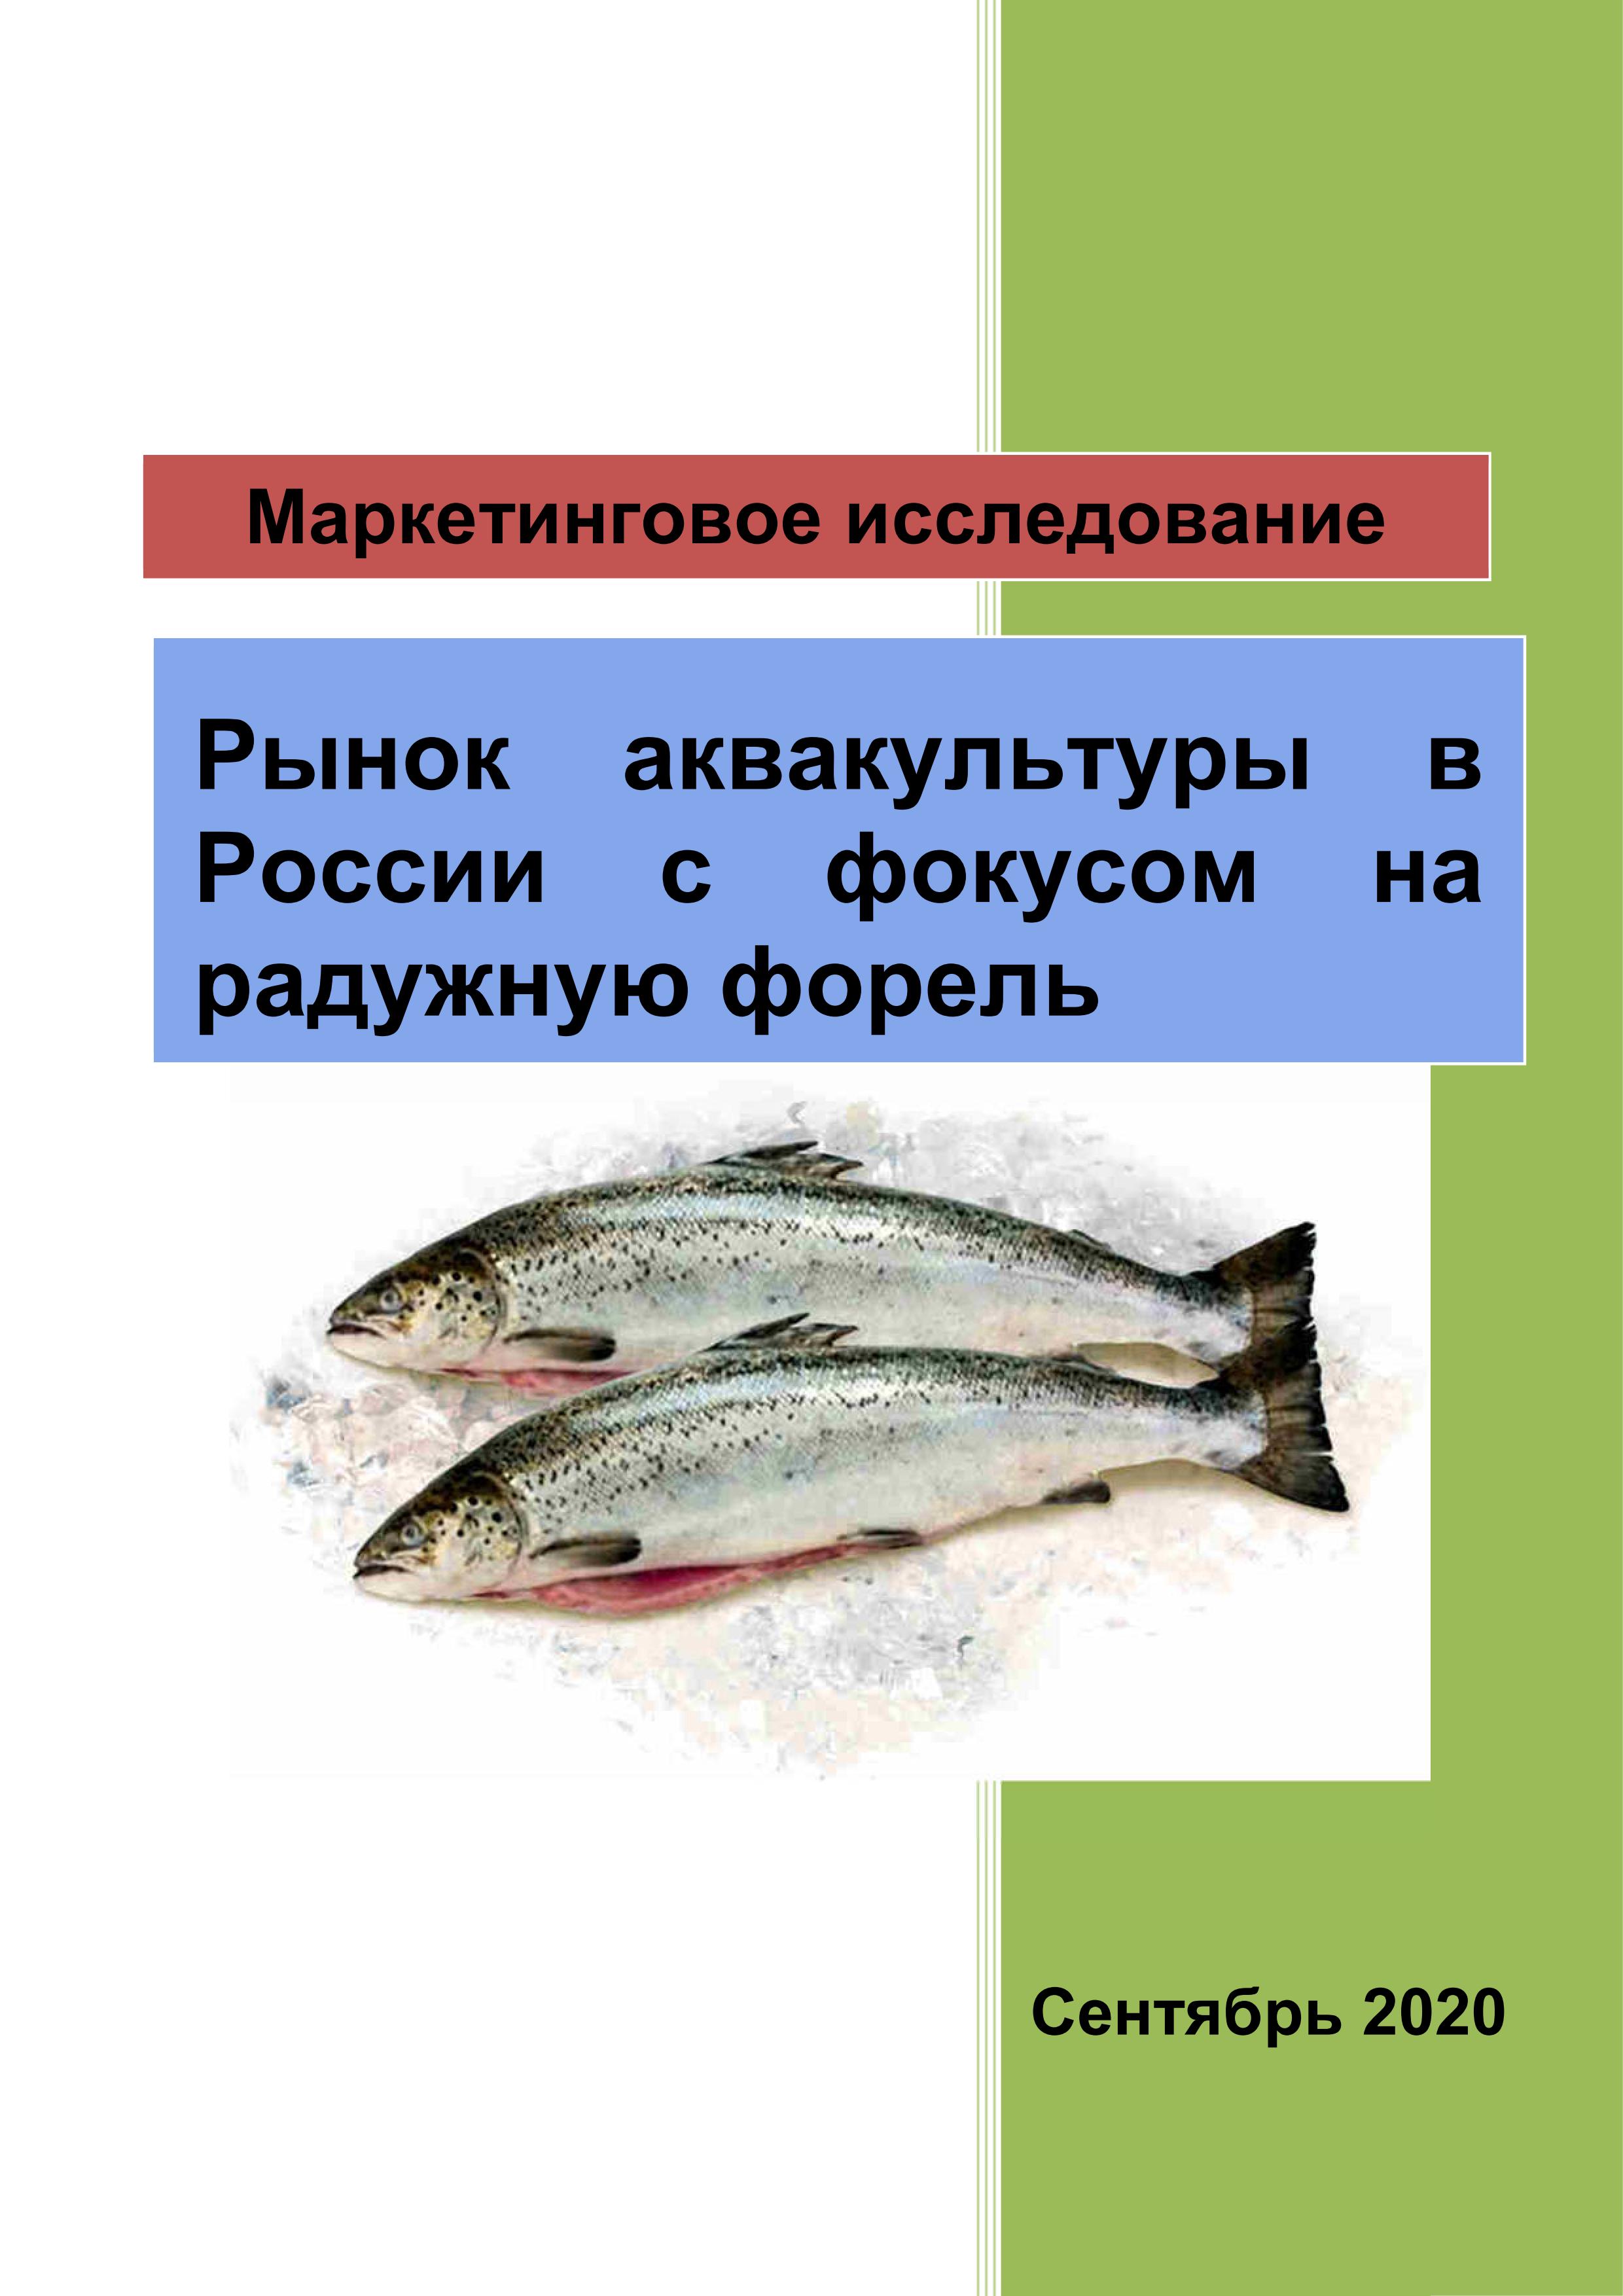  Ответ на вопрос по теме Рыба и рыбные продукты